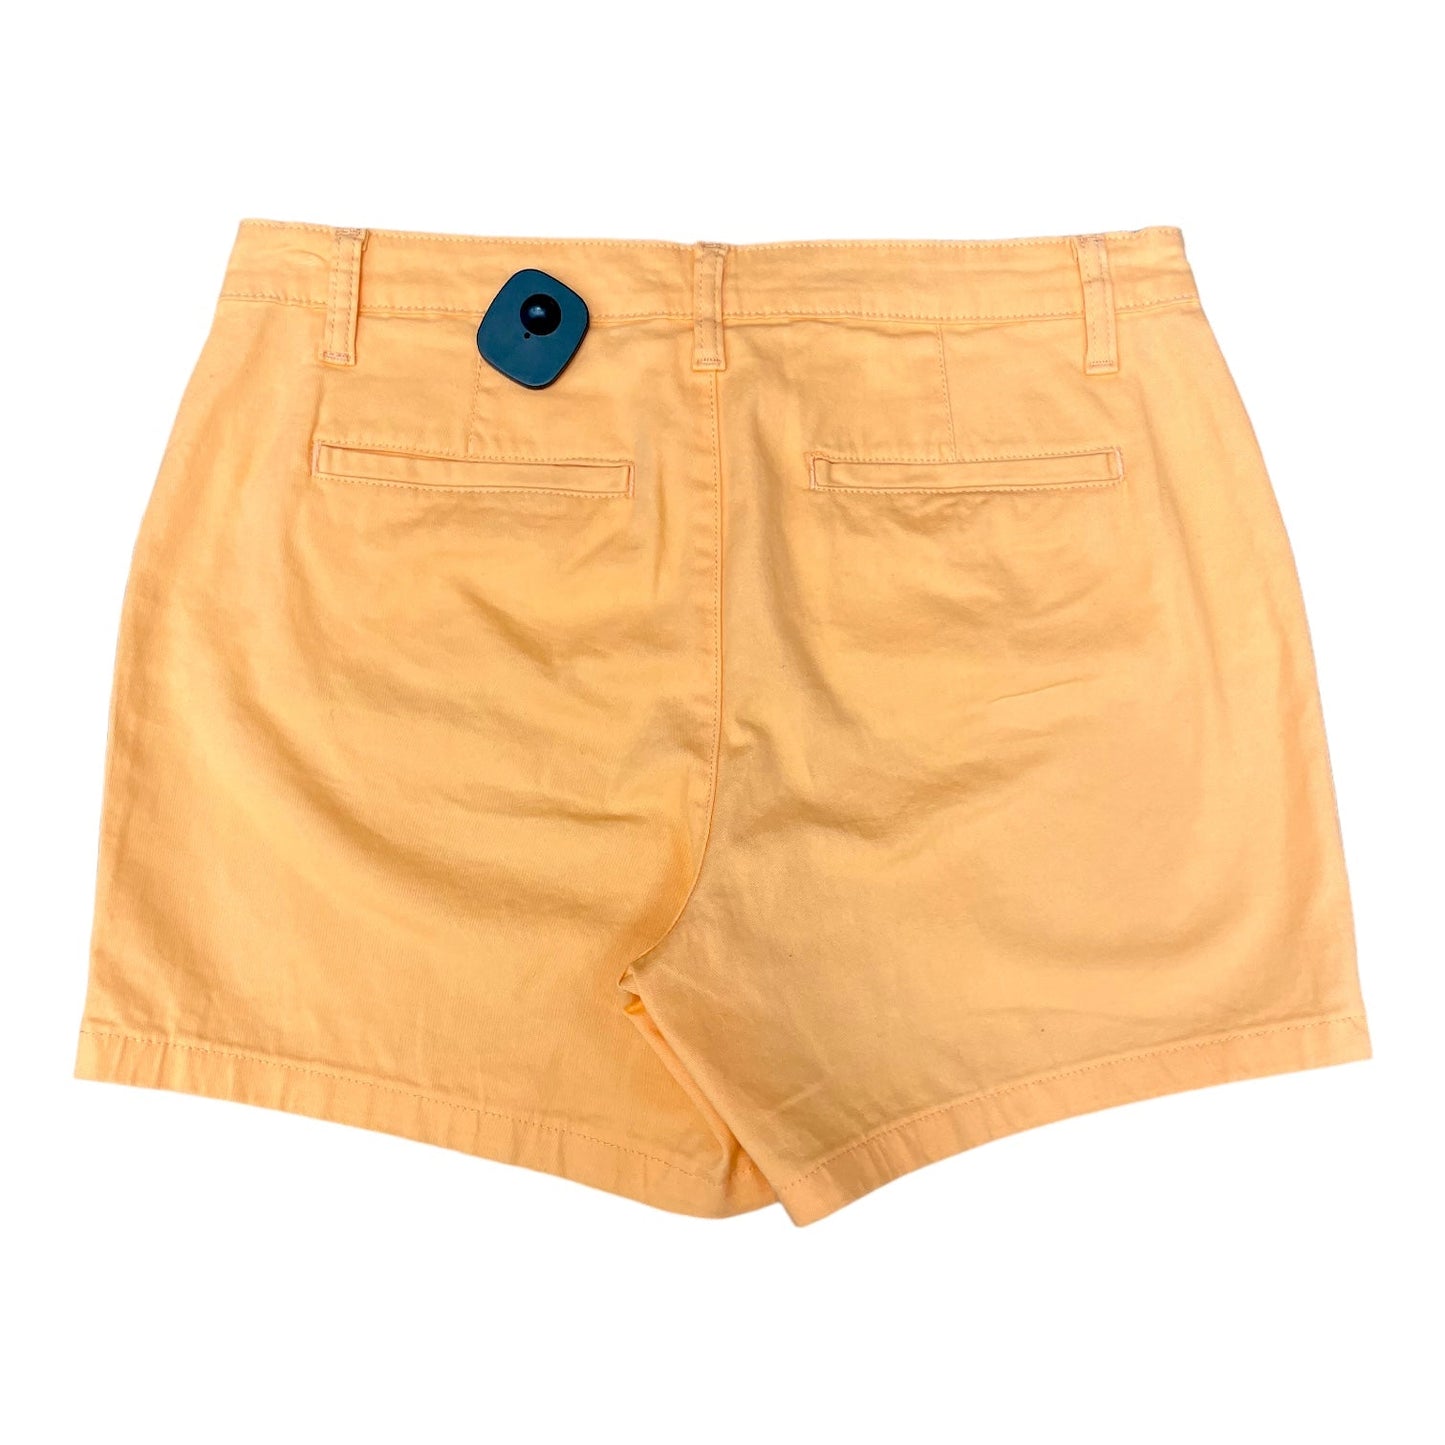 Orange Shorts St Johns Bay, Size 12